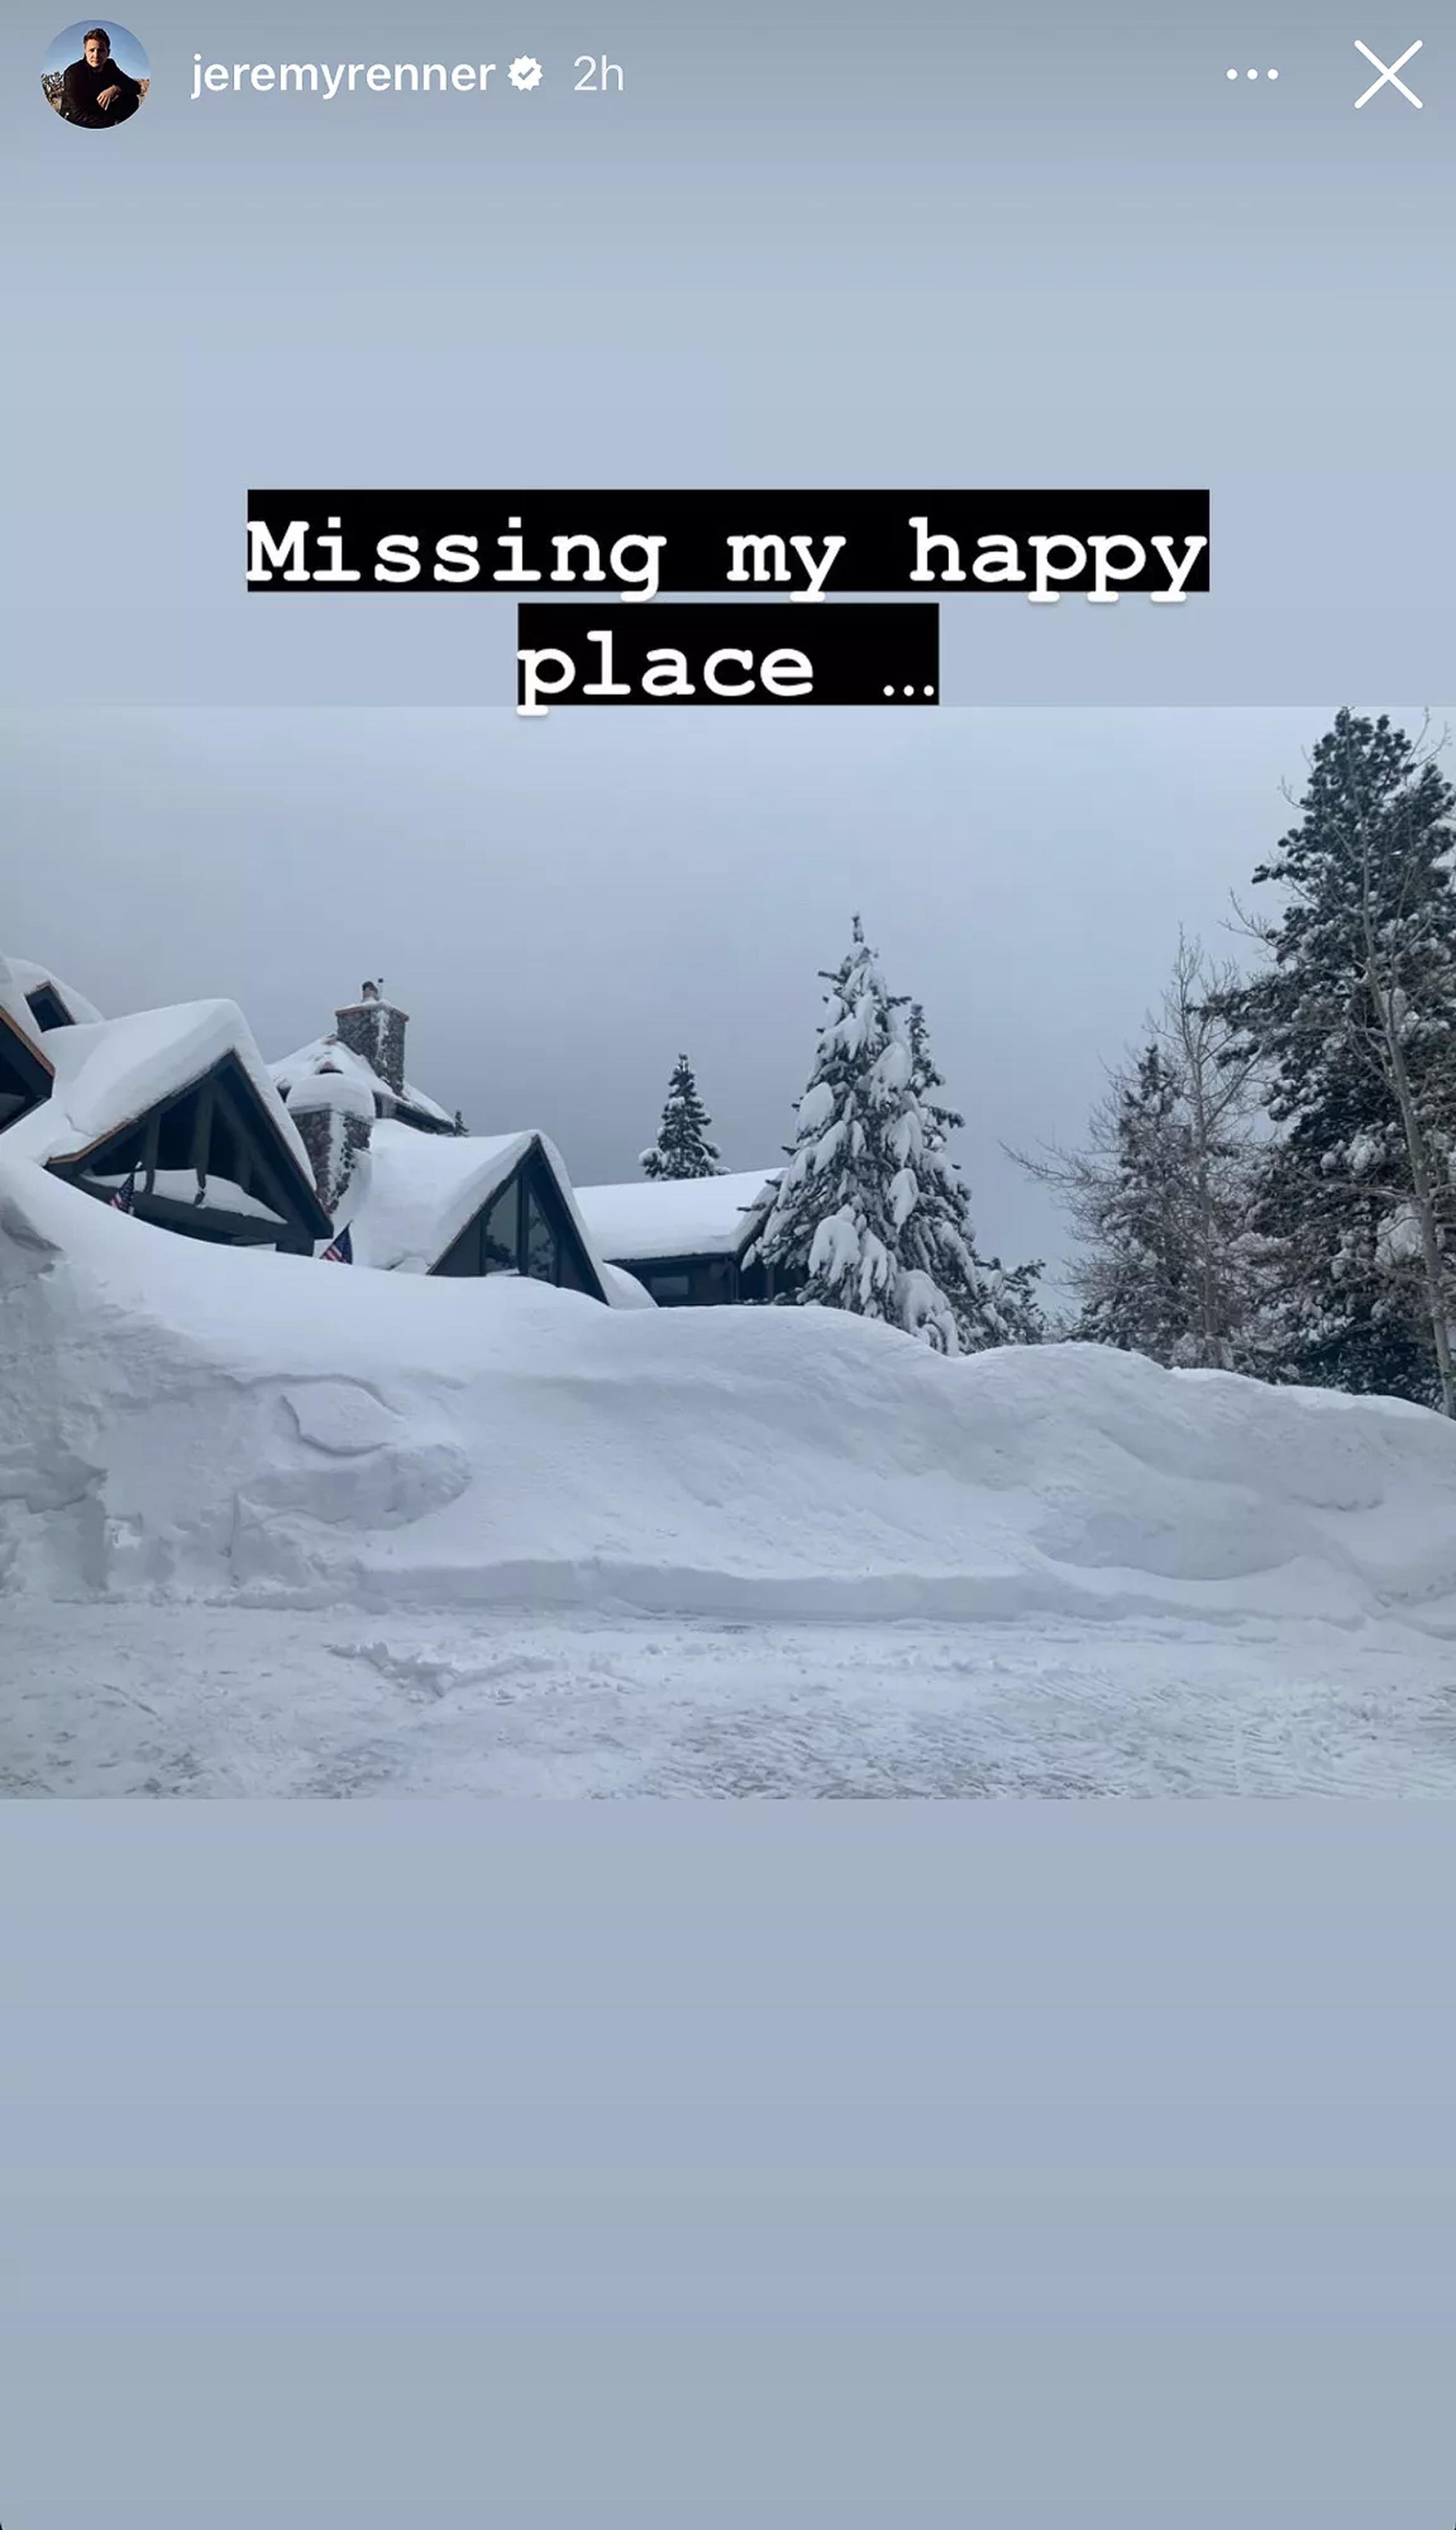 Jeremy Renner publicó un "story" en su cuenta de Instagram donde aseguró extrañar su cabaña en Reno.